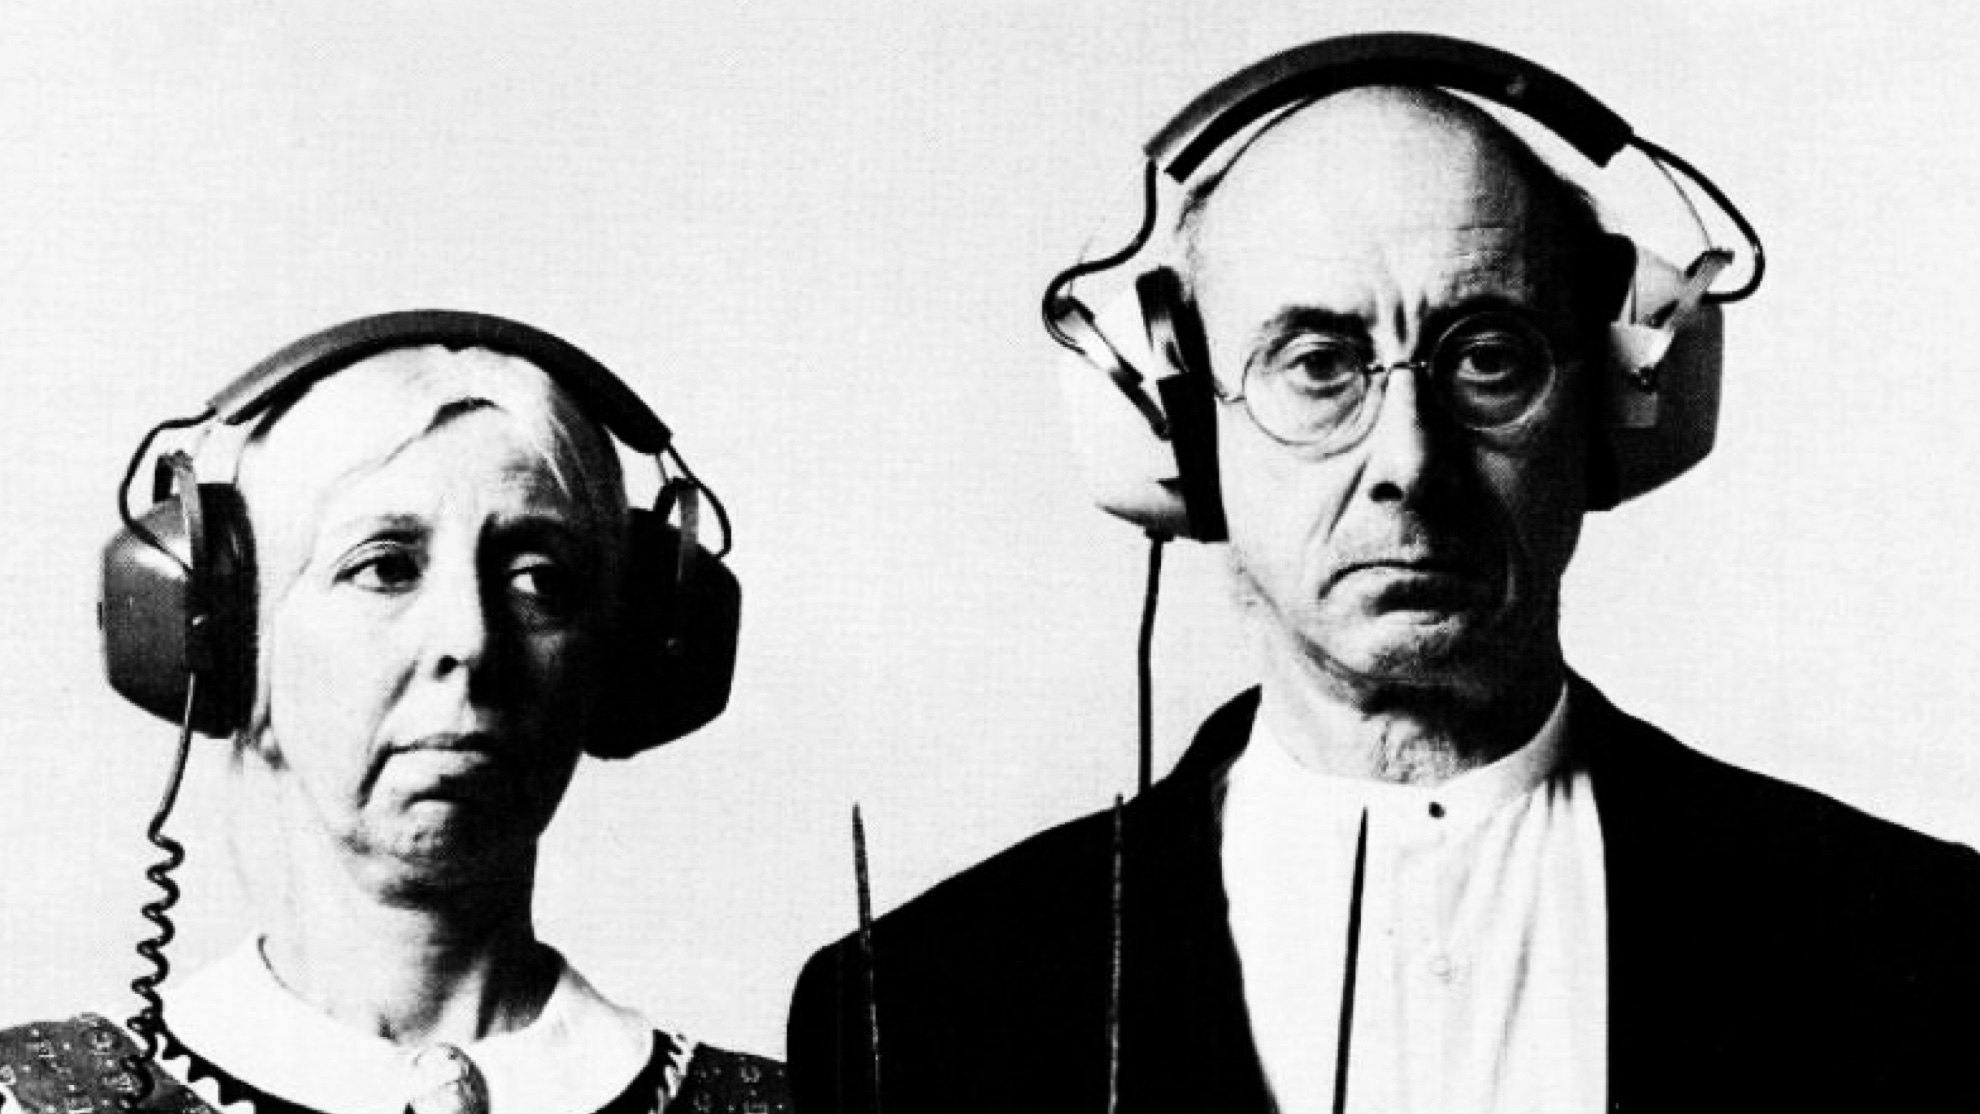 un anunț RCA din 197 care arată doi oameni purtând căști